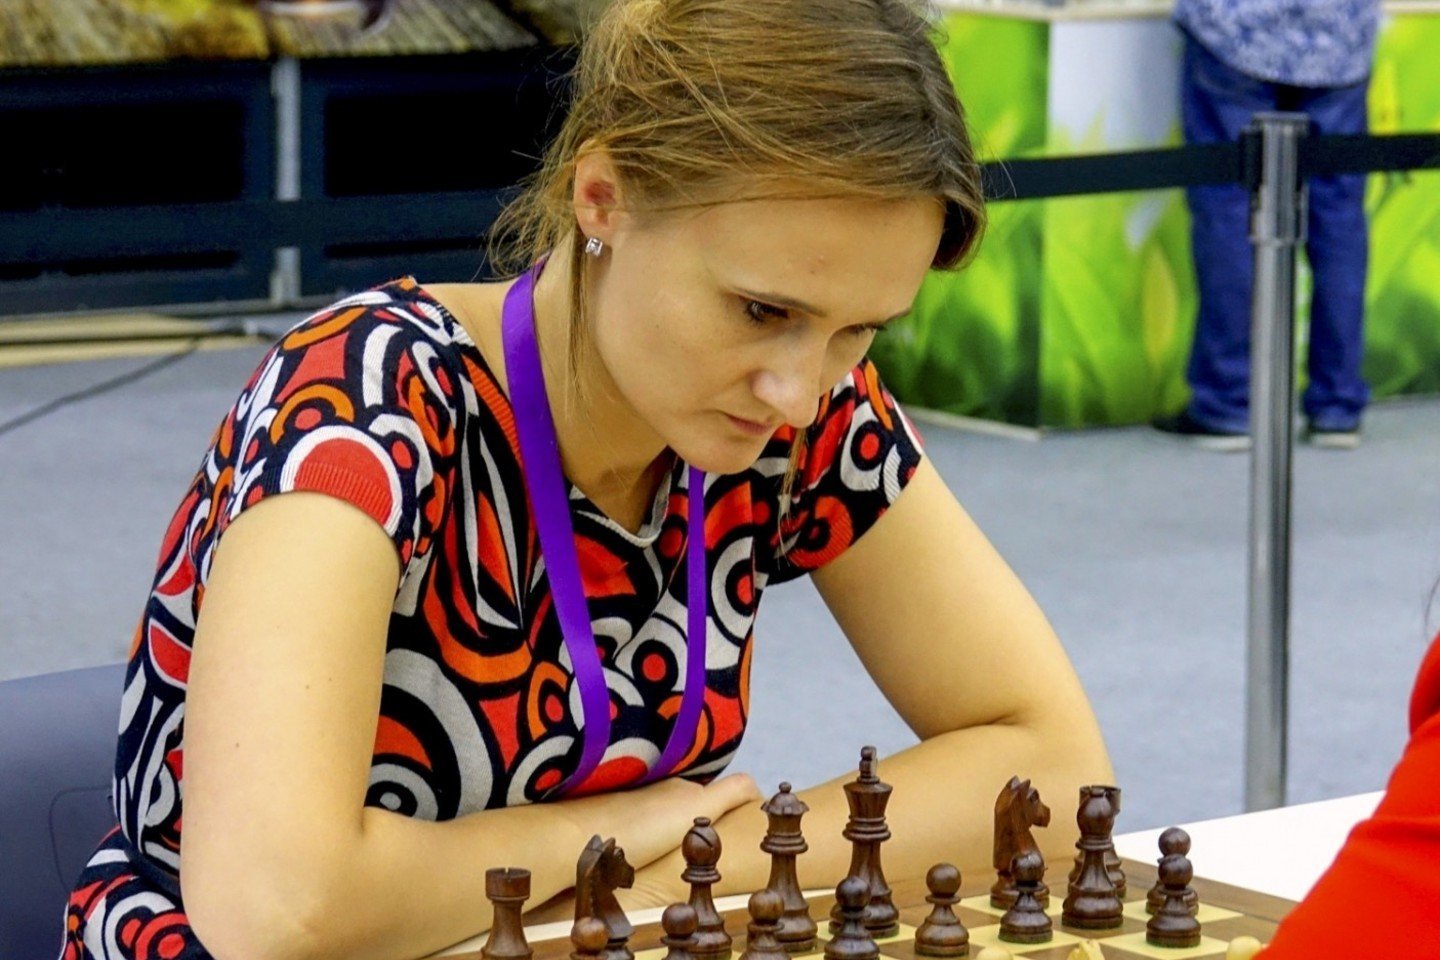  V.Čmilytė-Nielsen jau būdama Seimo nare 42-osios šachmatų olimpiados metu užsitikrino penktosios šachmatininkės pasaulyje vardą. Tai įvyko 2016-aisiais.<br> Paul Truong nuotr.